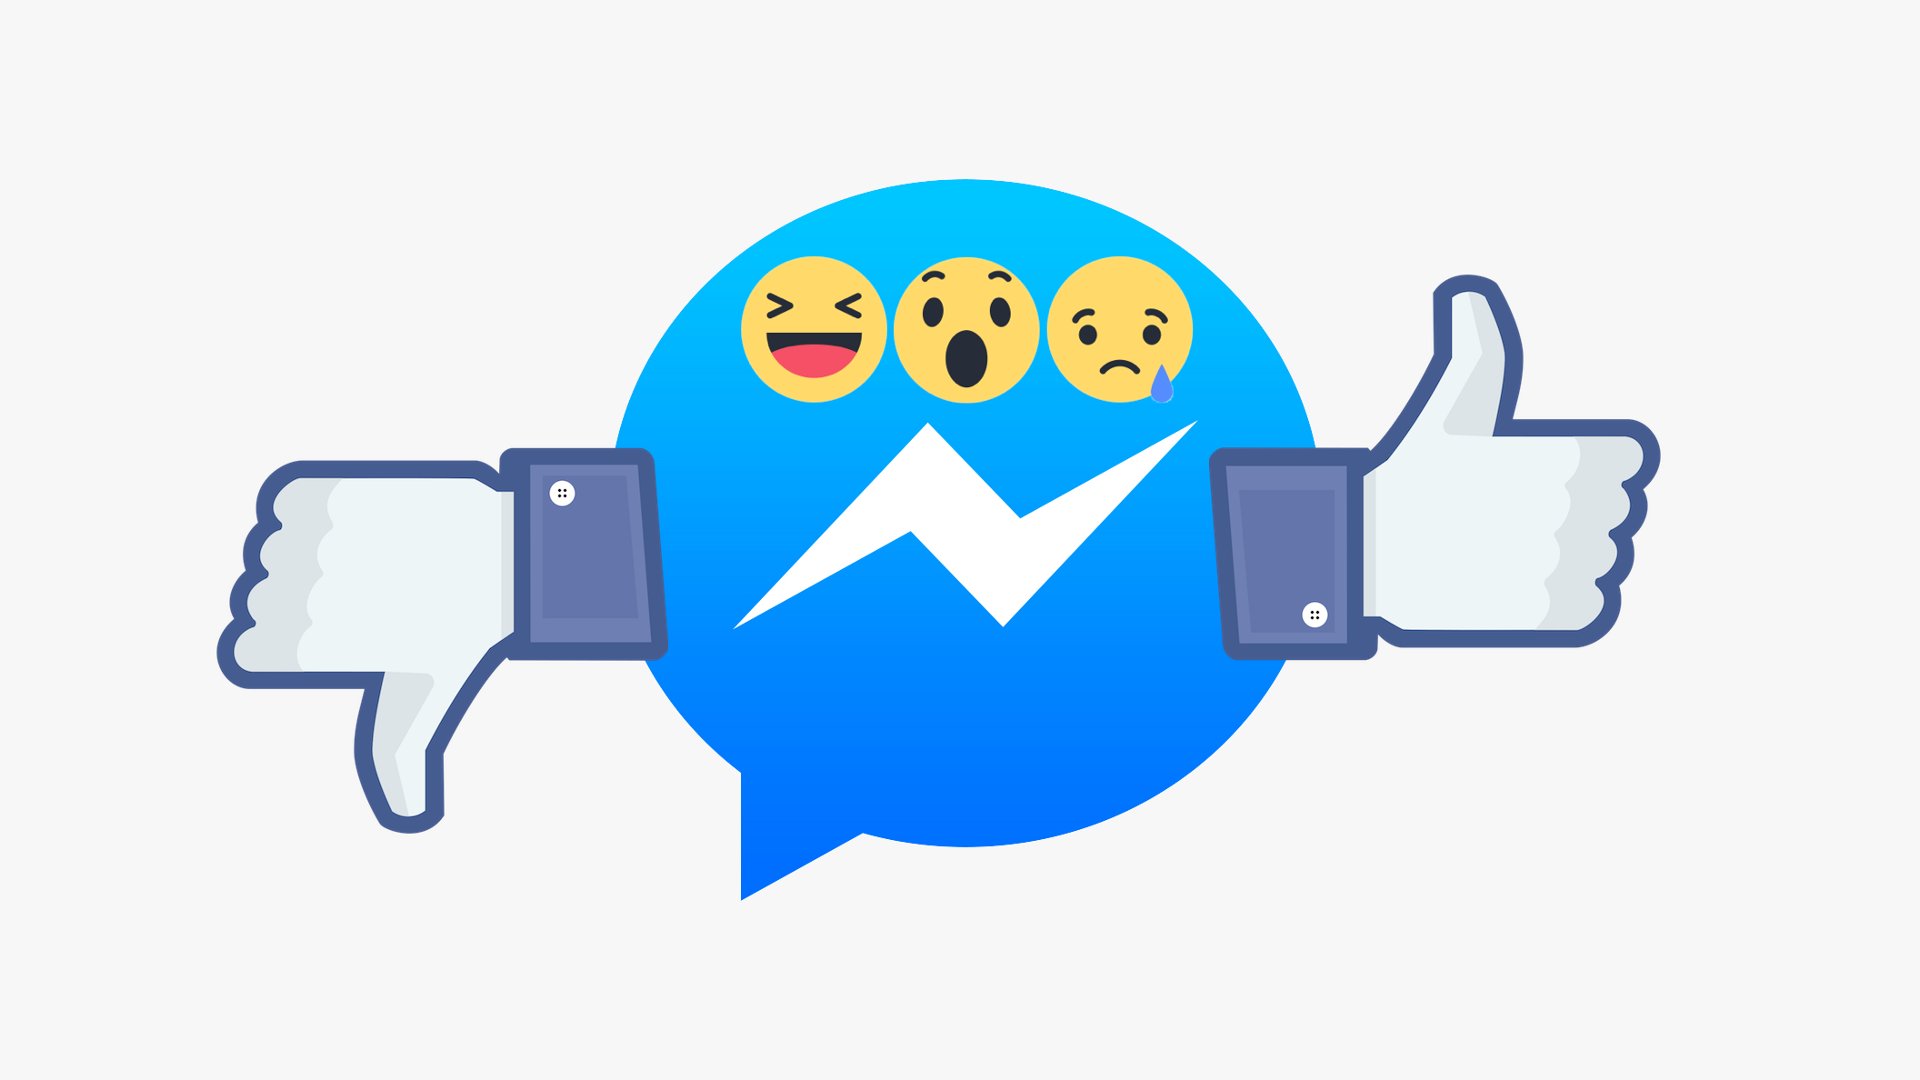 Facebook Messenger - Reactions